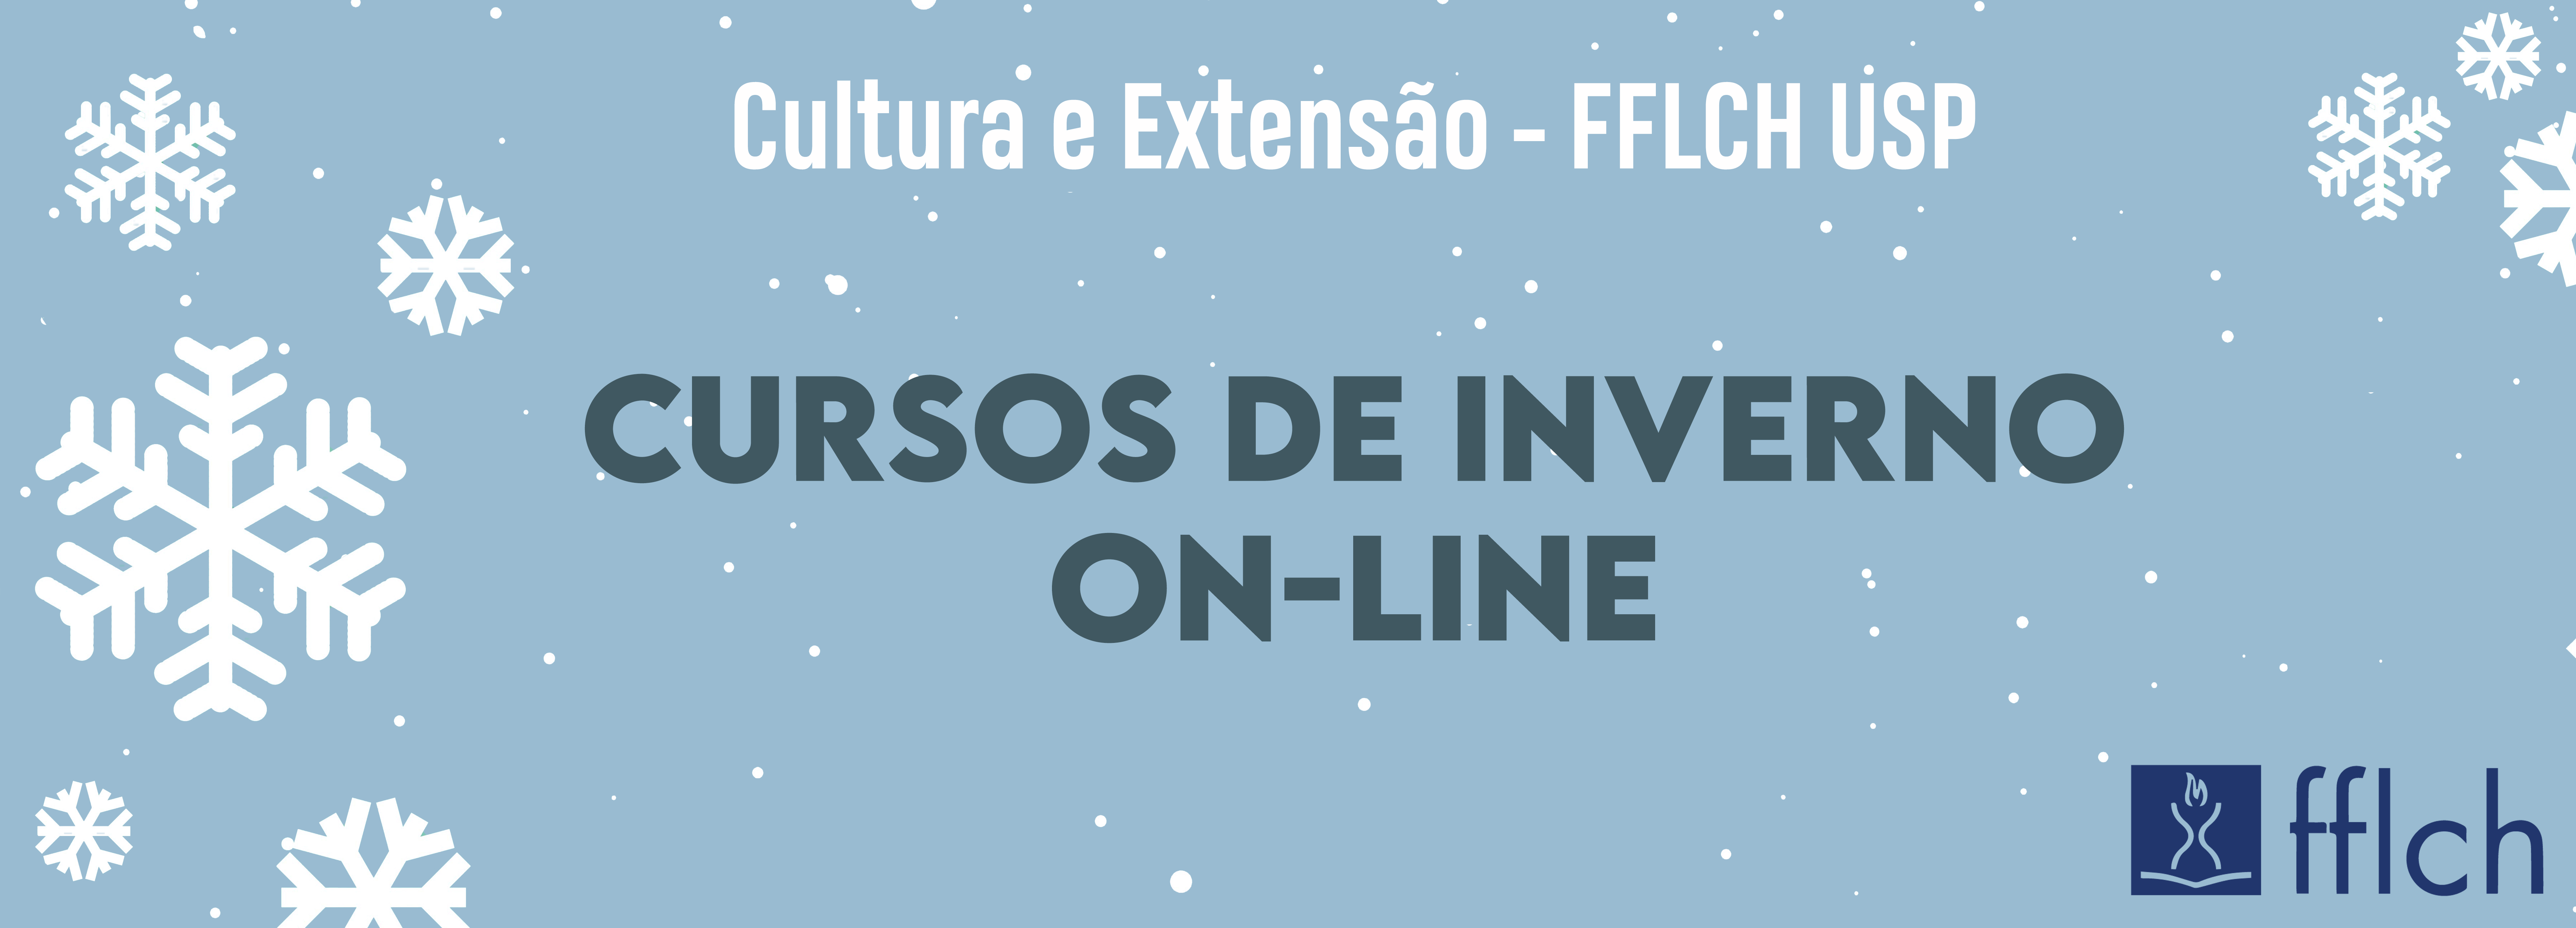 Cursos de Inverno On-line da FFLCH 2020